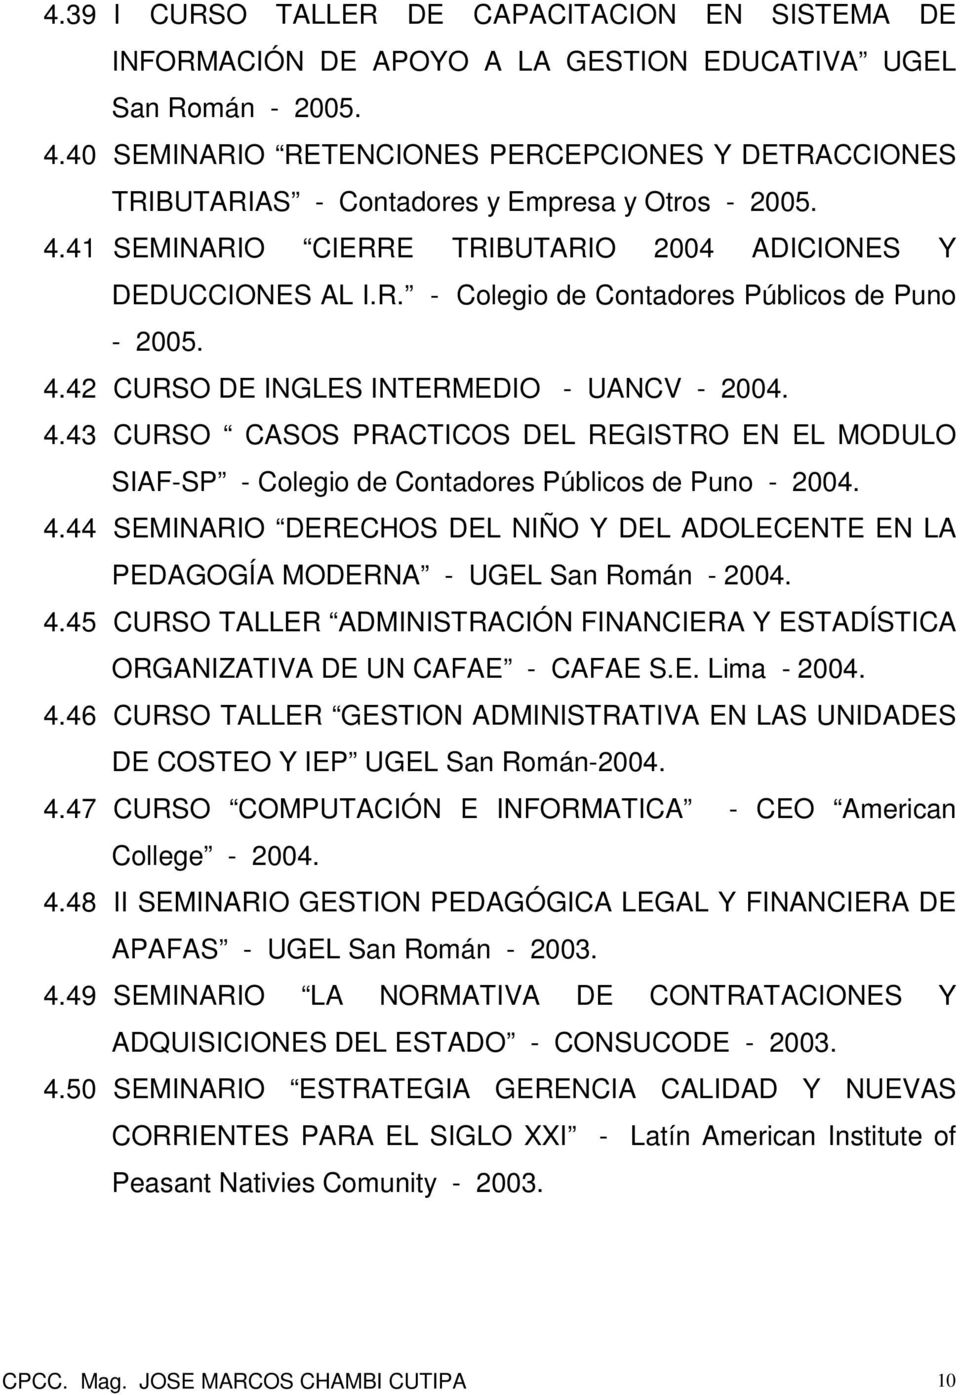 4.42 CURSO DE INGLES INTERMEDIO - UANCV - 2004. 4.43 CURSO CASOS PRACTICOS DEL REGISTRO EN EL MODULO SIAF-SP - Colegio de Contadores Públicos de Puno - 2004. 4.44 SEMINARIO DERECHOS DEL NIÑO Y DEL ADOLECENTE EN LA PEDAGOGÍA MODERNA - UGEL San Román - 2004.